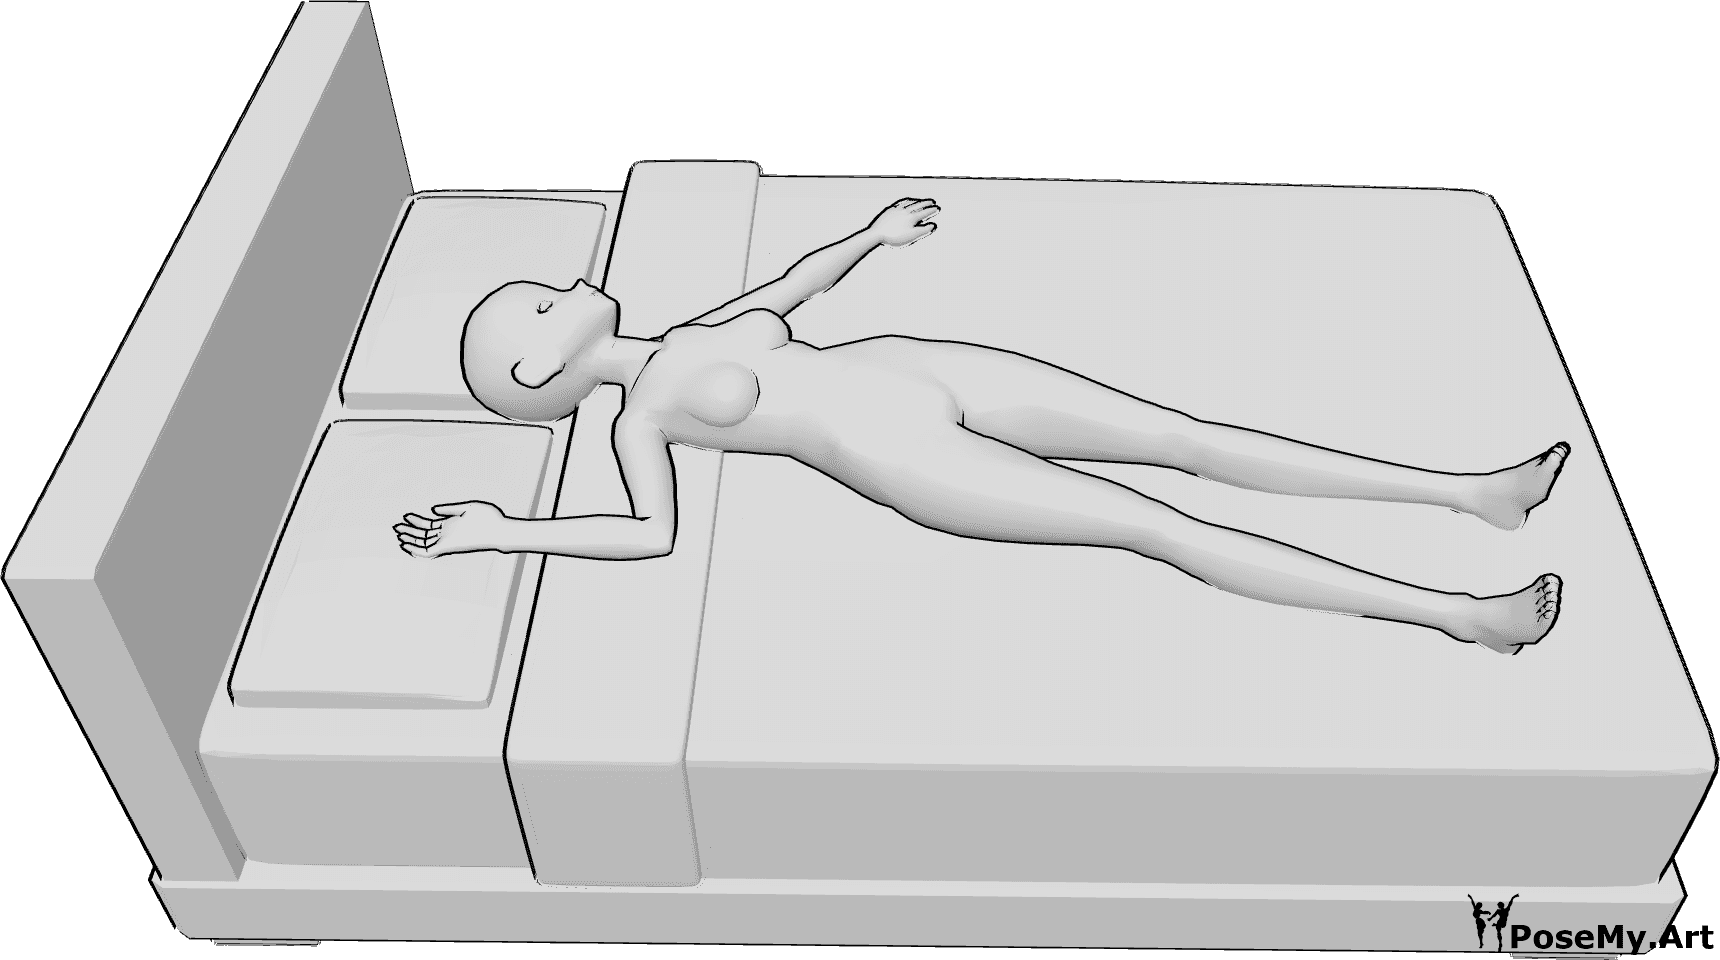 Referência de poses- Pose de anime deitado de costas - Mulher anime deitada de costas e a dormir, pose de anime a dormir